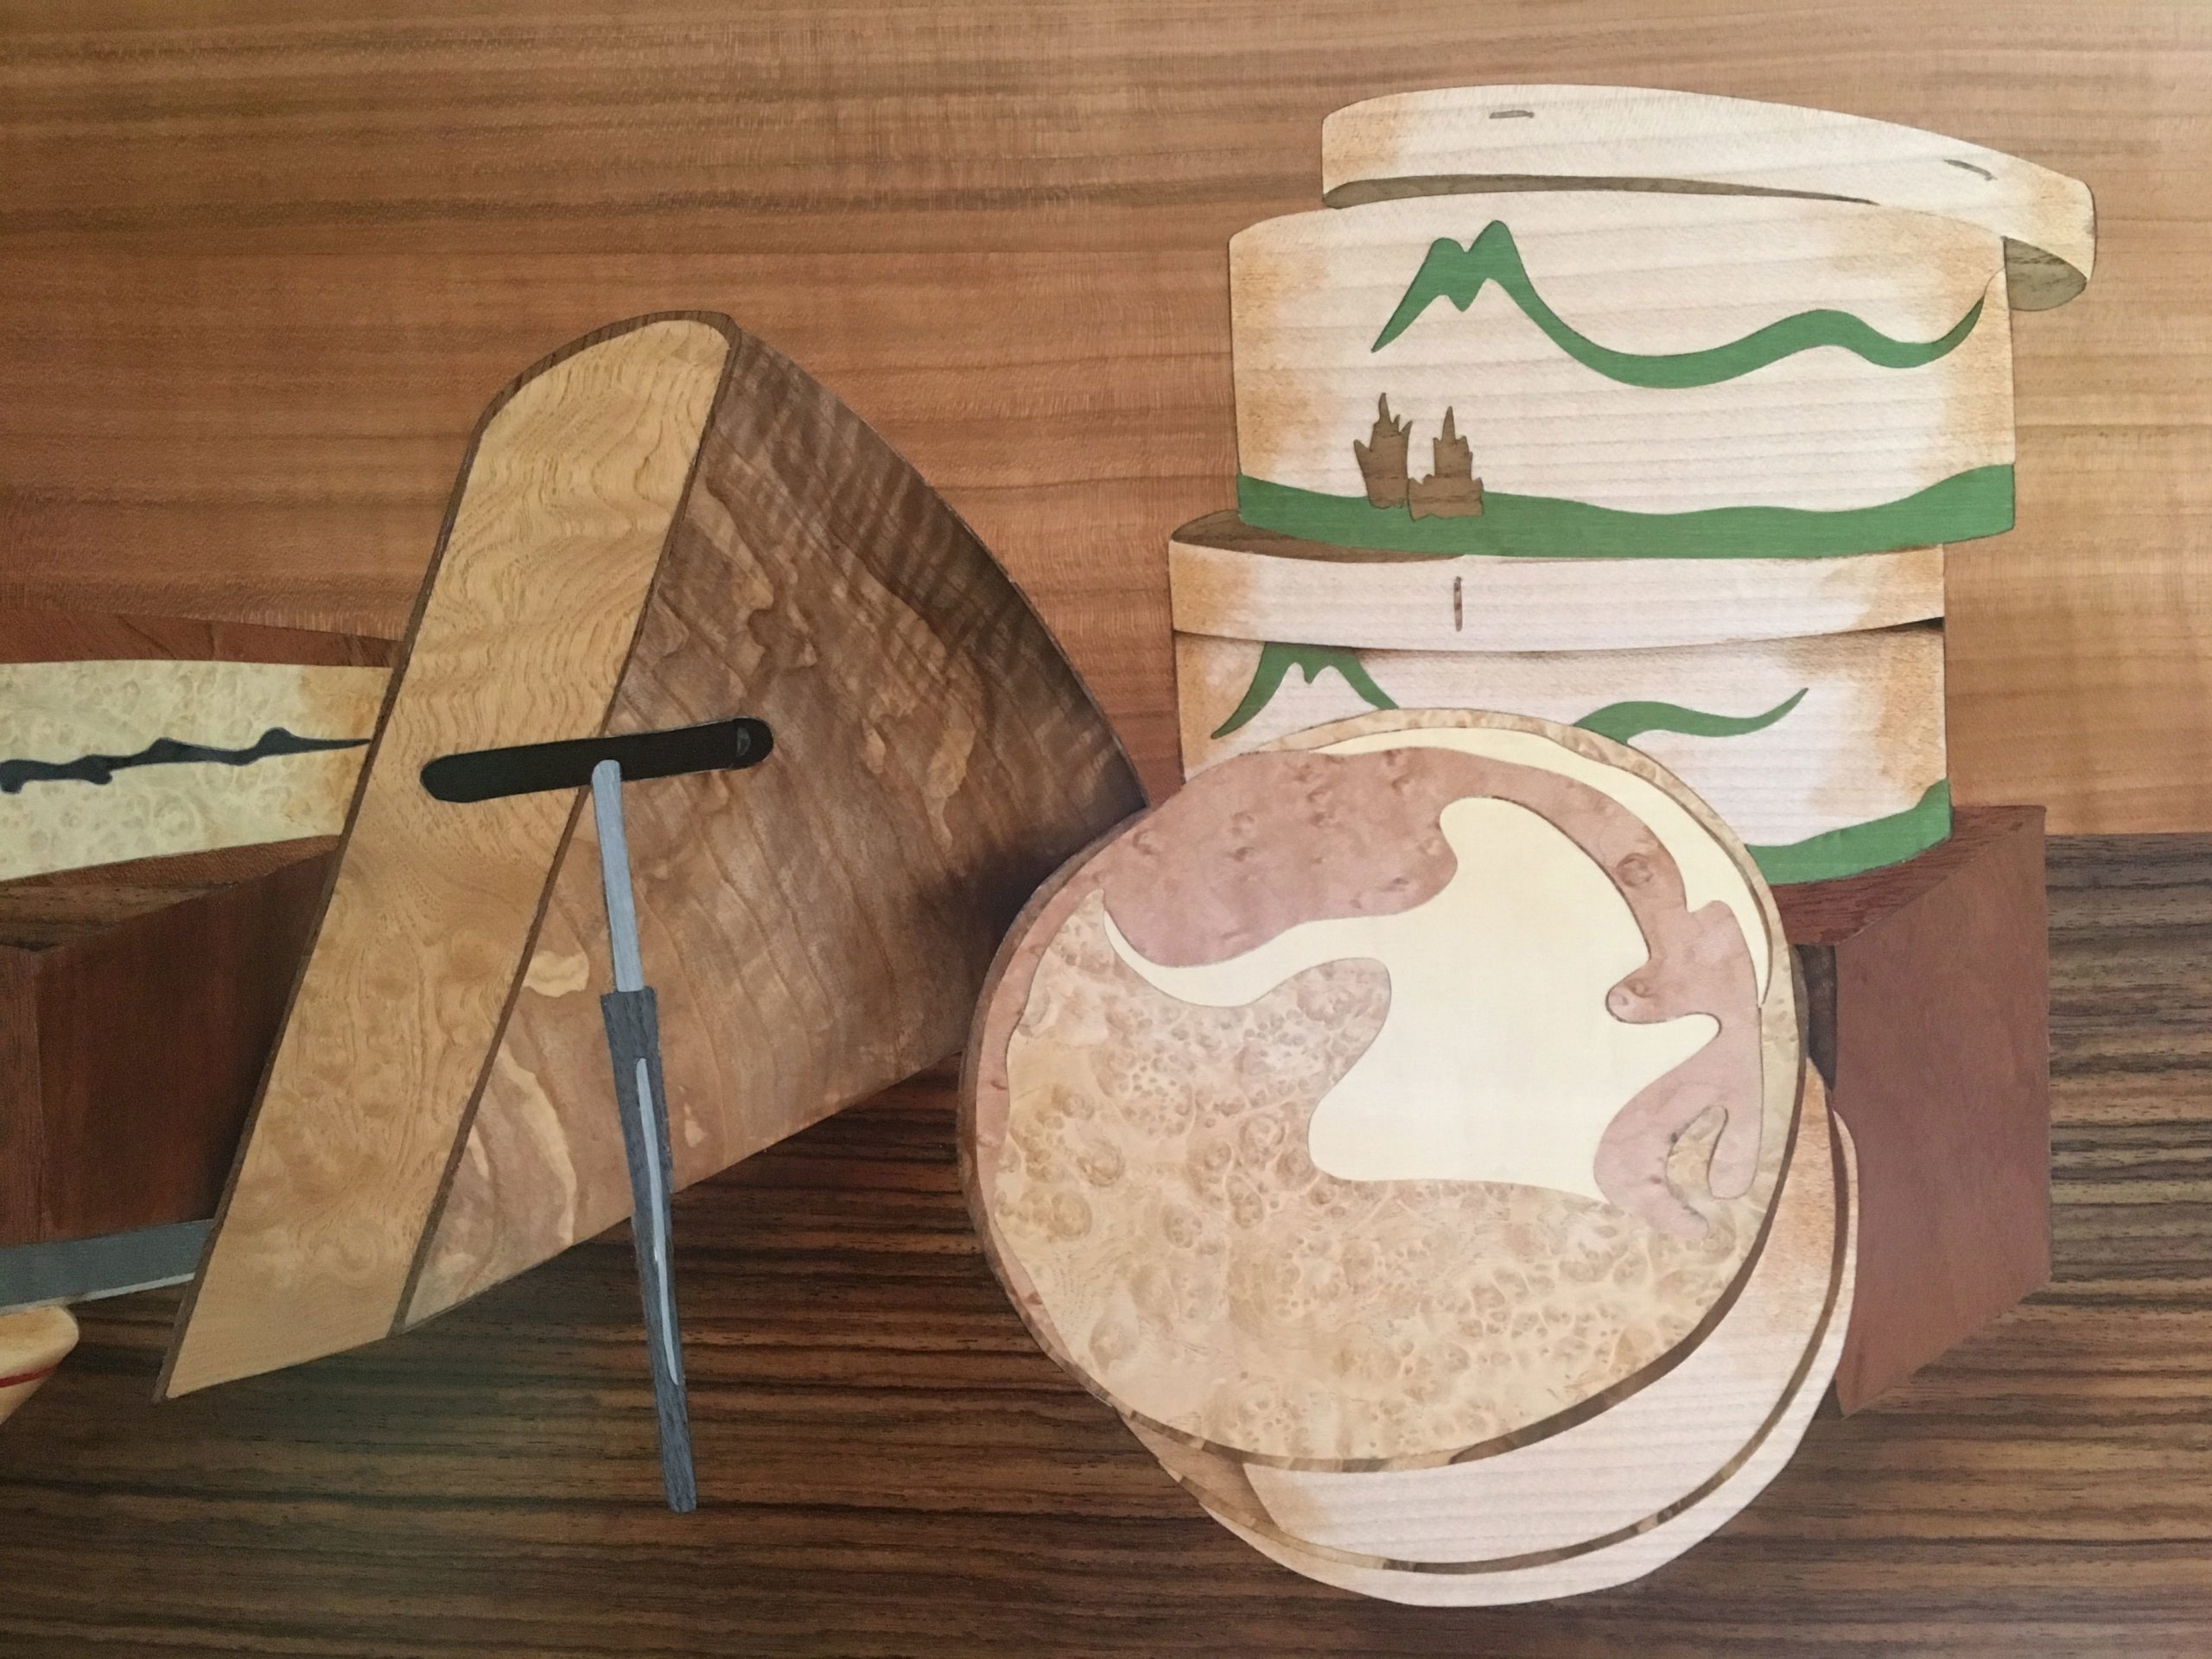 Personnalisation d'objets en bois – Objet personnalisé : cadeau, déco…